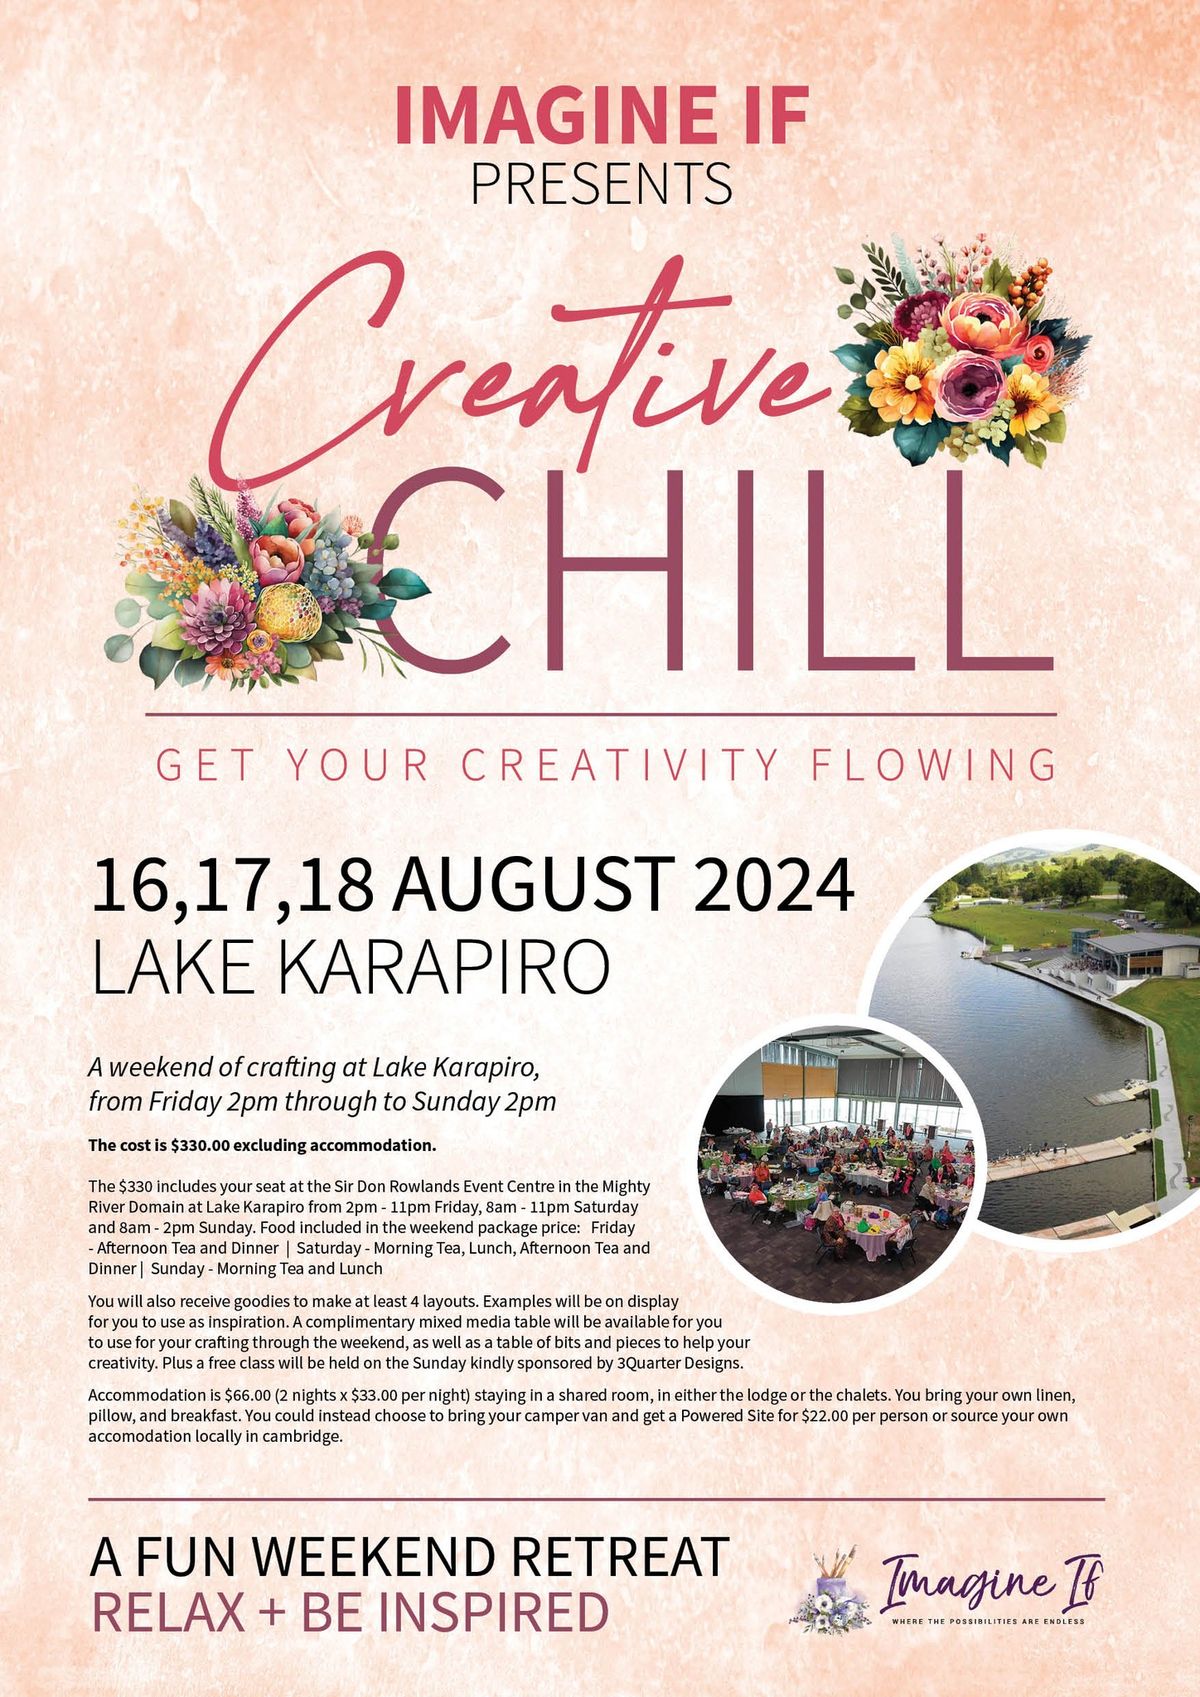 CREATIVE CHILL - IMAGINE IF at Lake Karapiro